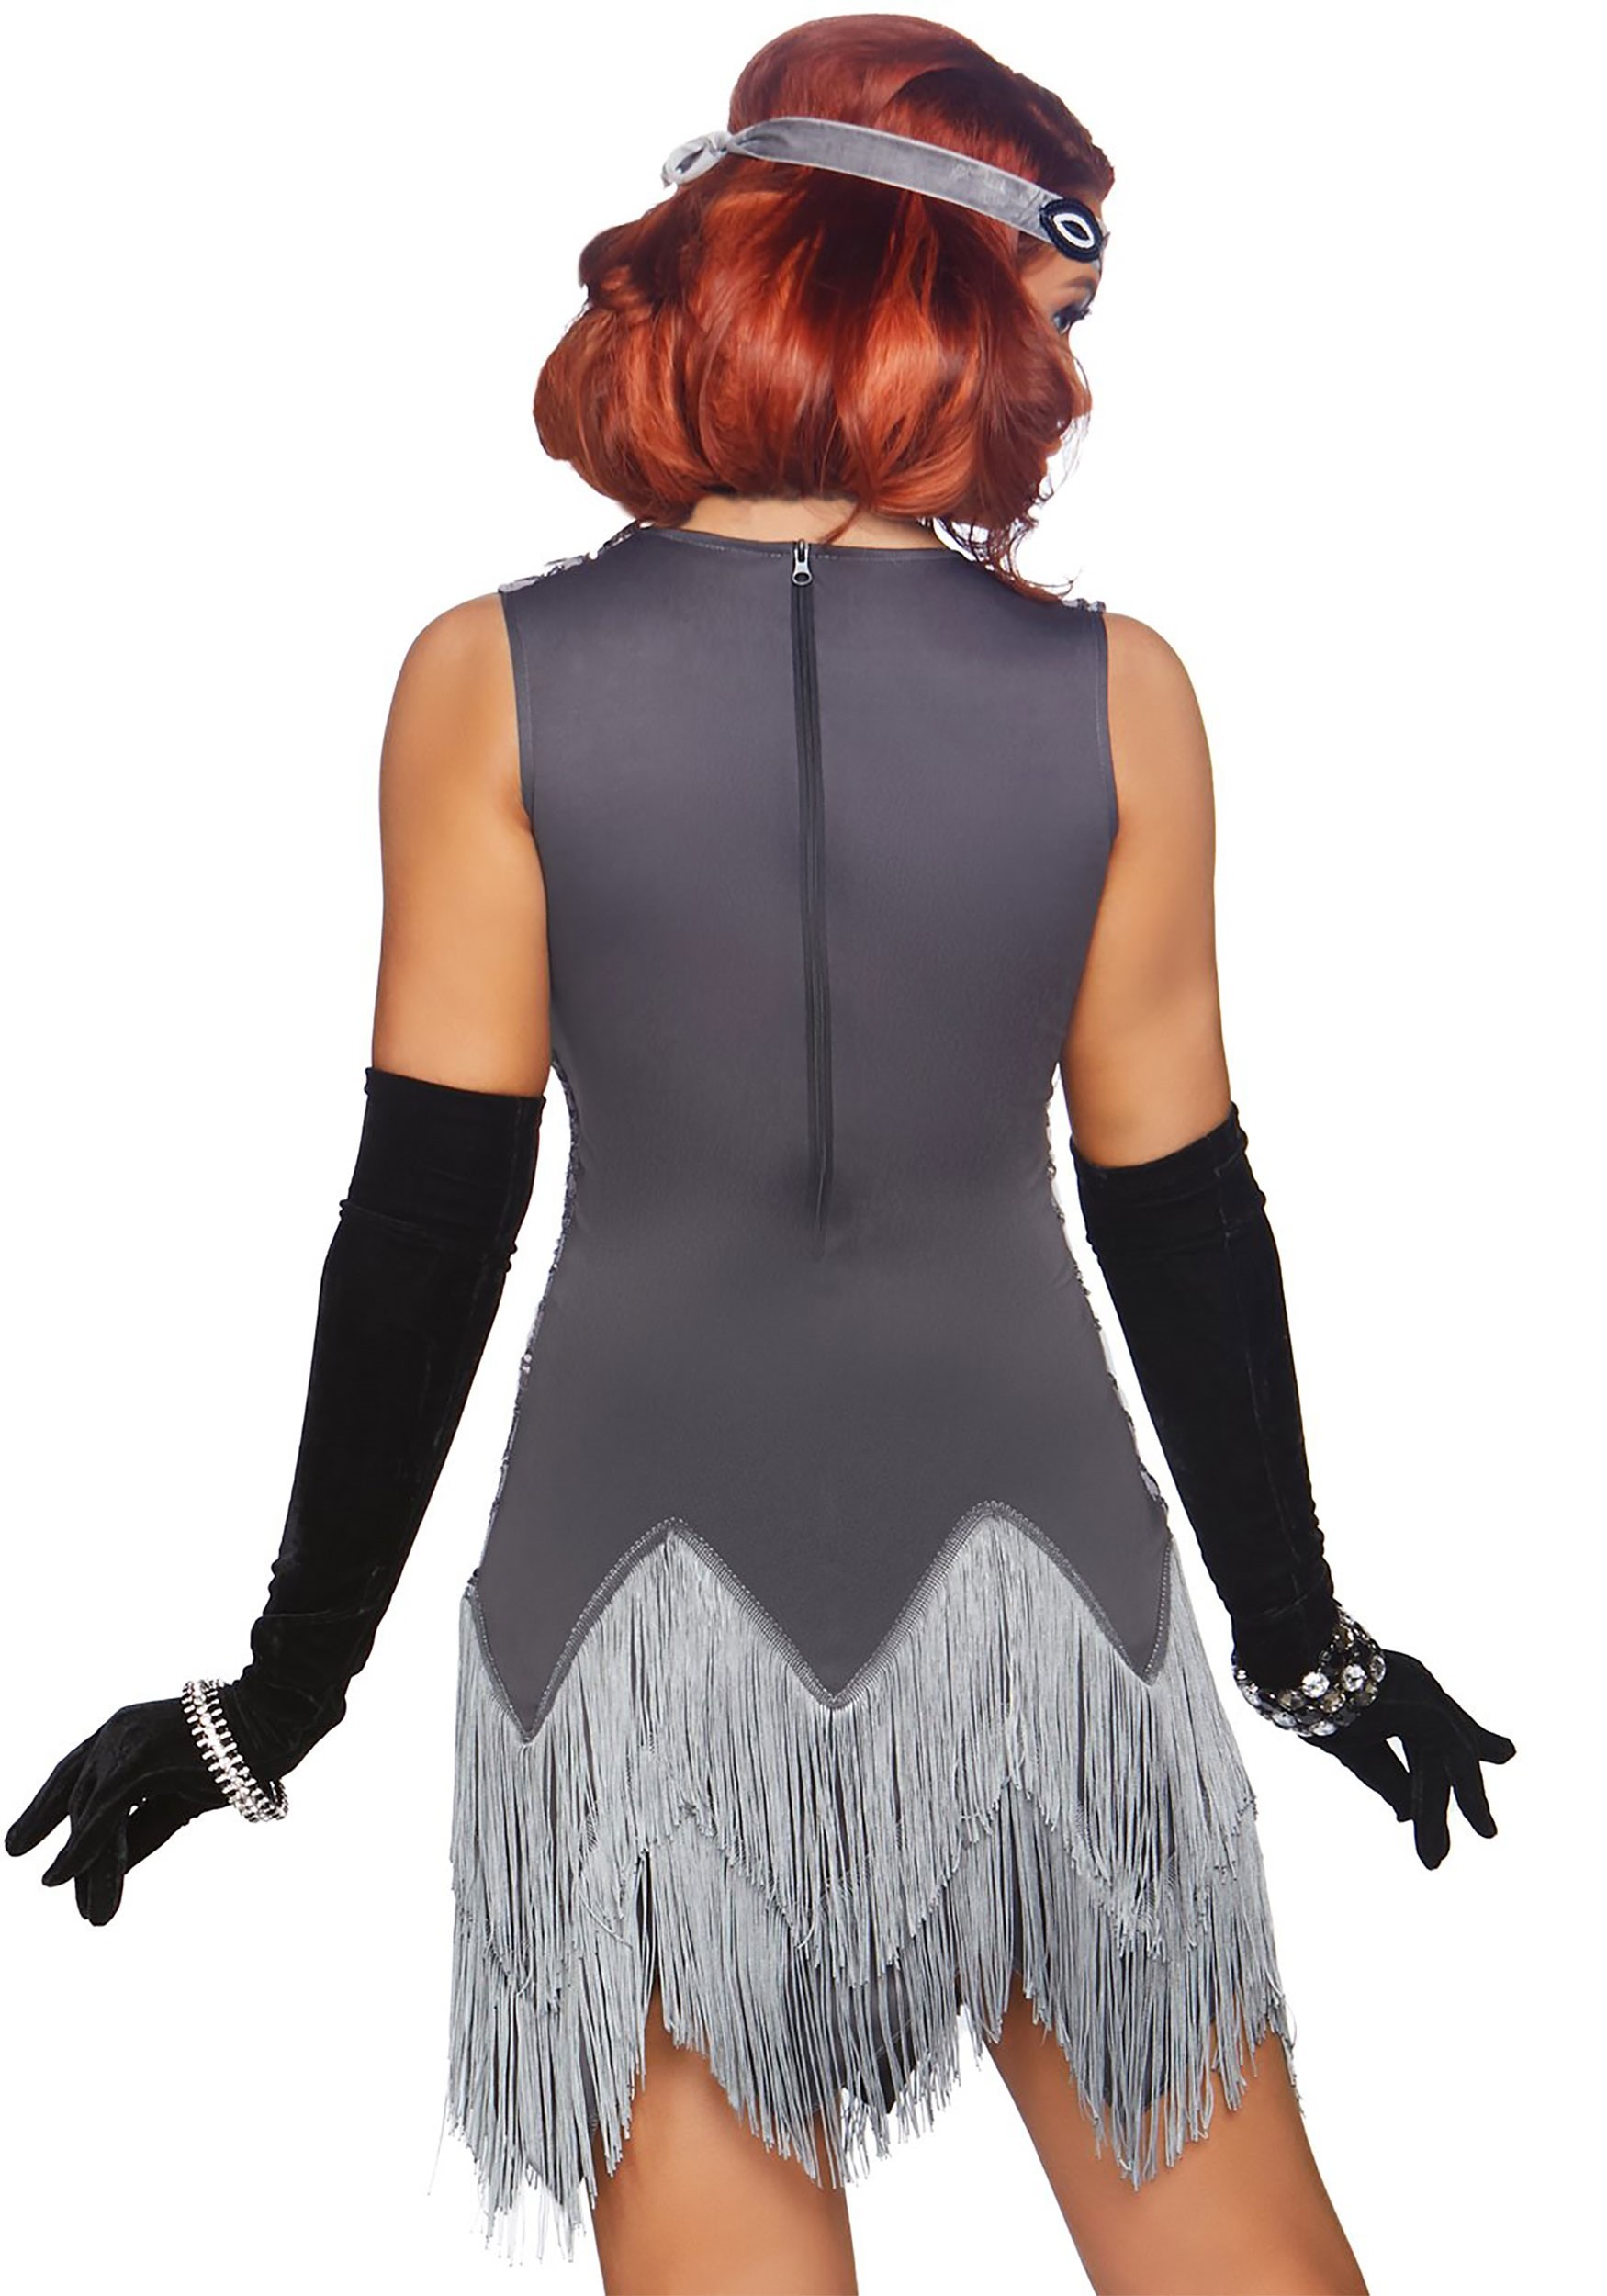 Roaring Roxy Flapper Women's Fancy Dress Costume